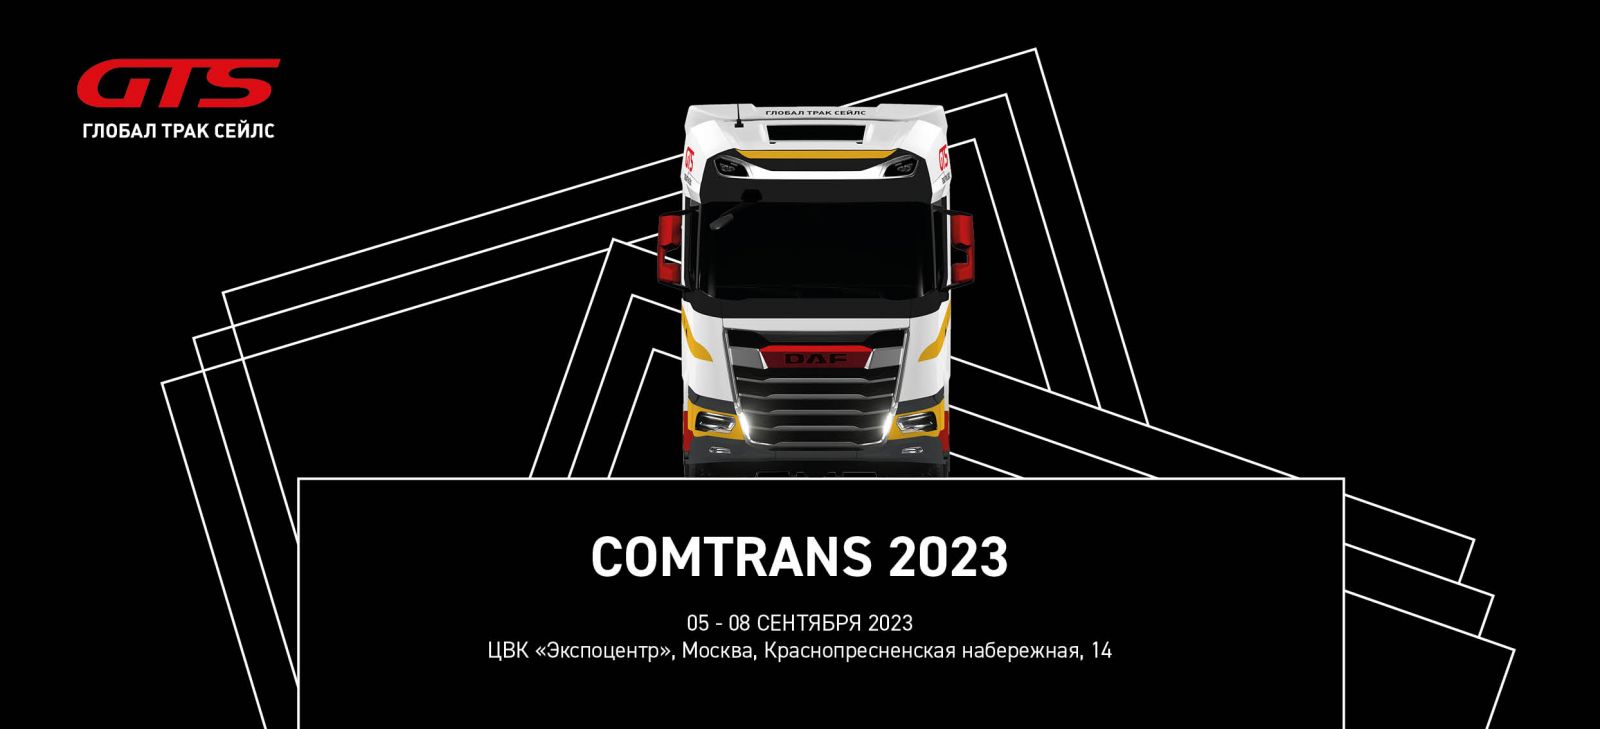 ГТС Comtrans 2023